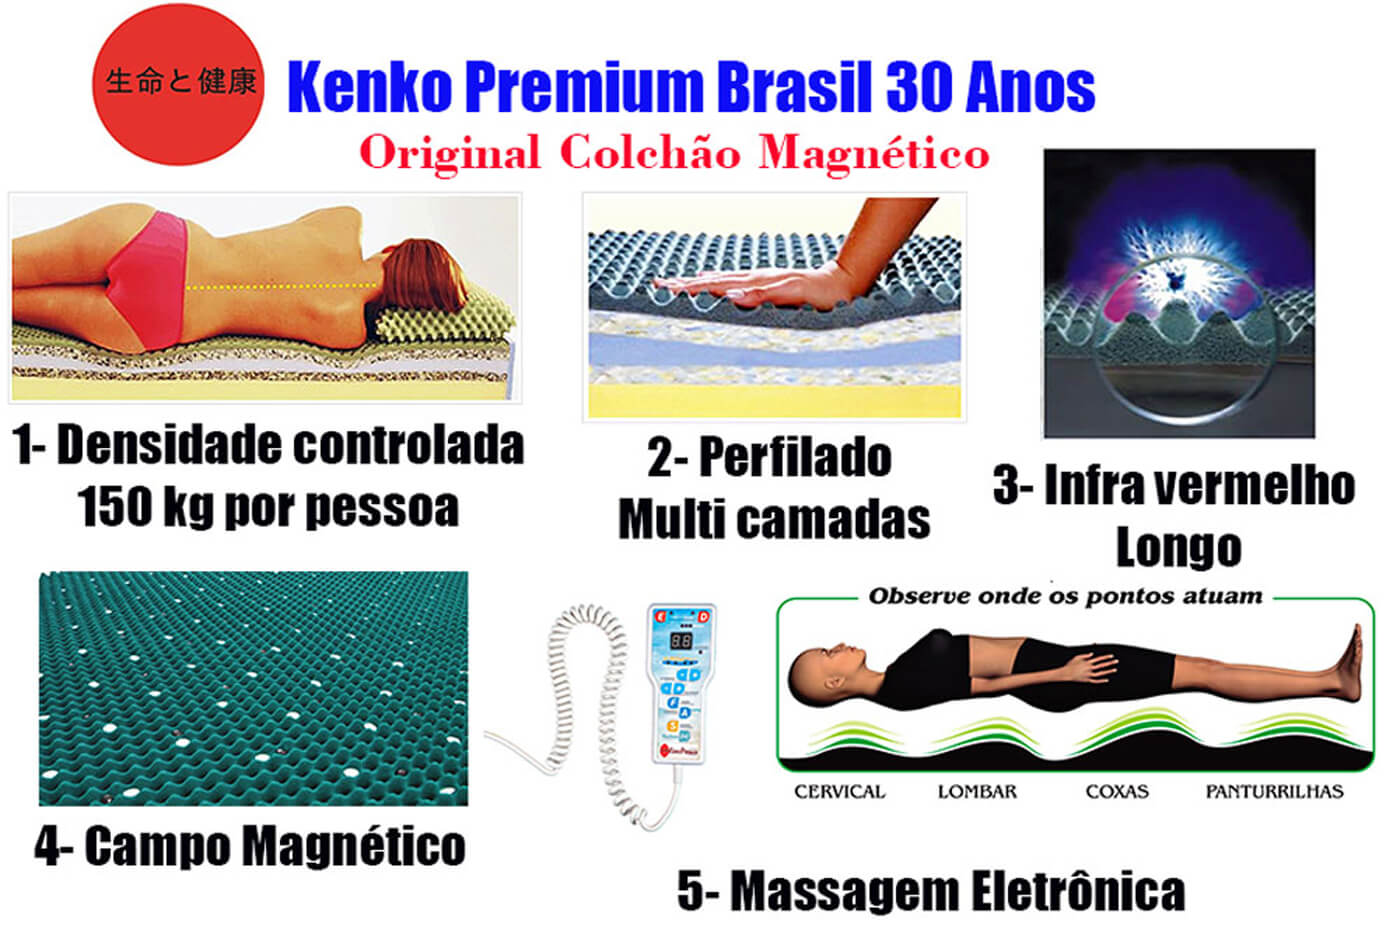 Colchão Magnético Solteiro Kenko Premium Standart  C/ Massagem Eletrônica Energia Bioquãntica 0,88x1,88x25cm  - Kenko Premium Colchões